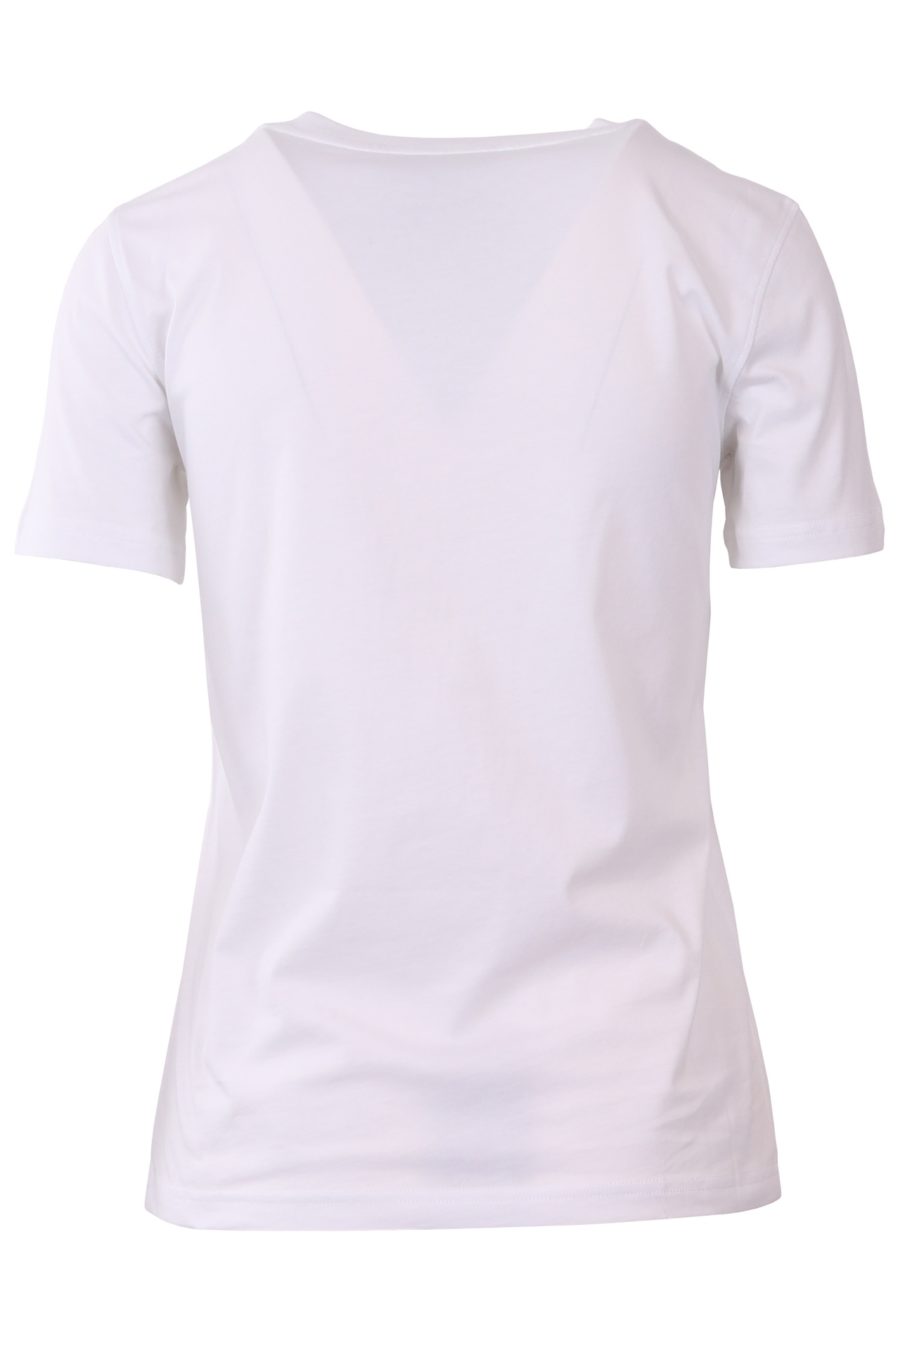 Camiseta Moschino Couture blanca con logo grande milano - a77ad4470c89934a96999f0ebd0fe0313878d905